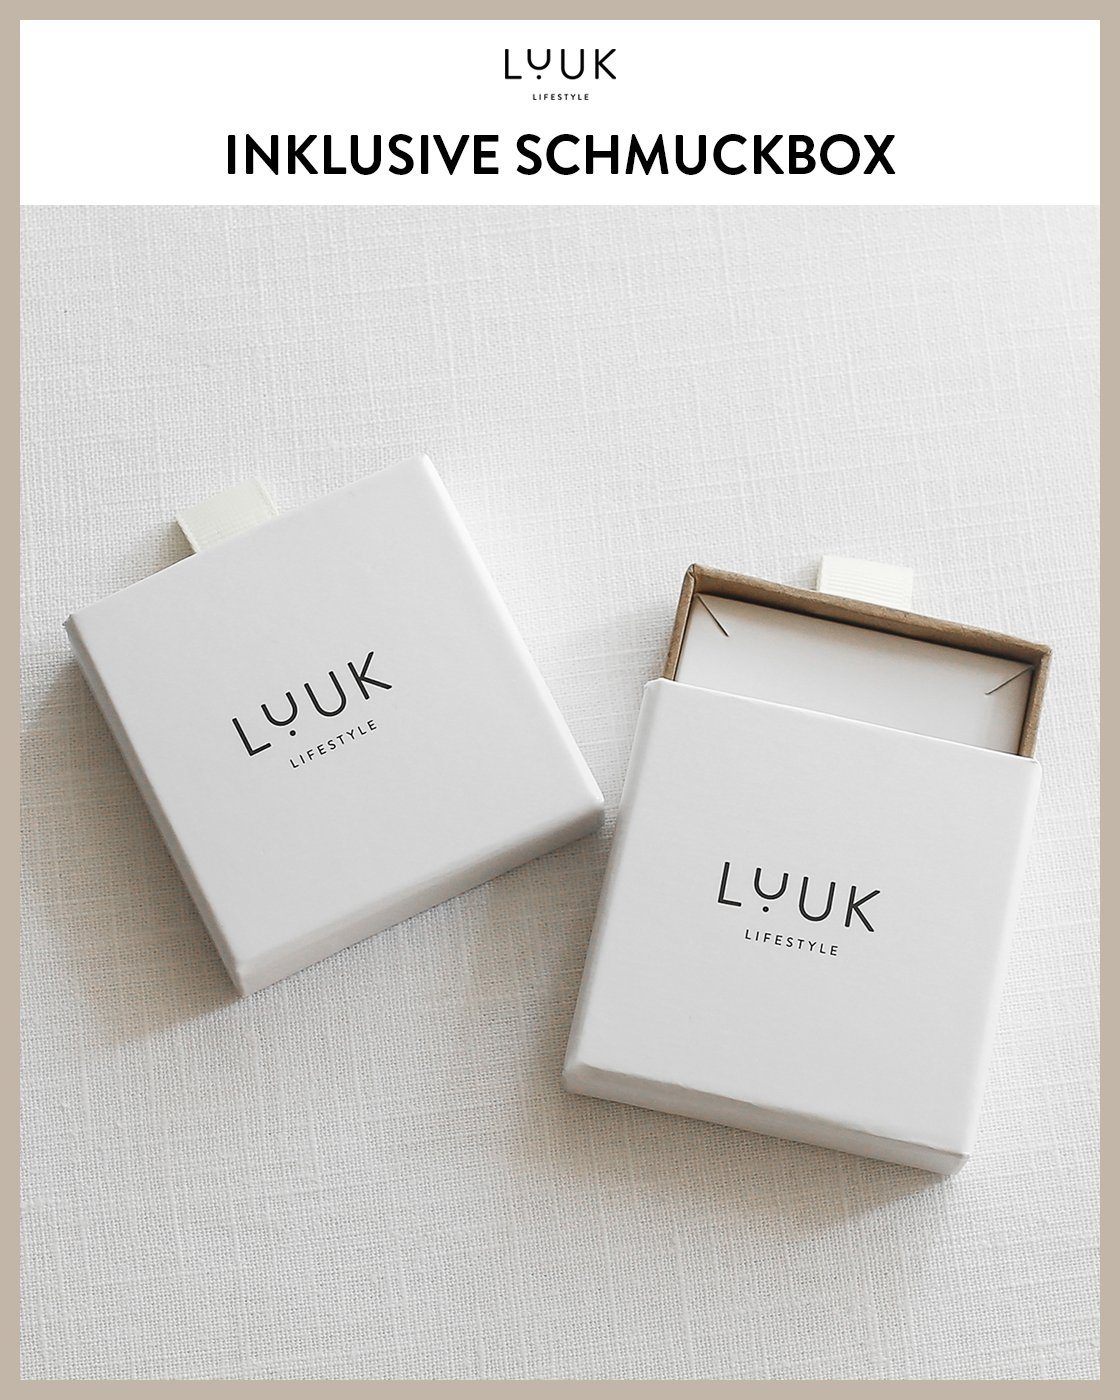 LIFESTYLE hautverträglich, Ohrstecker alltagstauglich, wasserfest Silber Viereck, Design, Paar schöner modernes Schmuckbox LUUK inklusive &